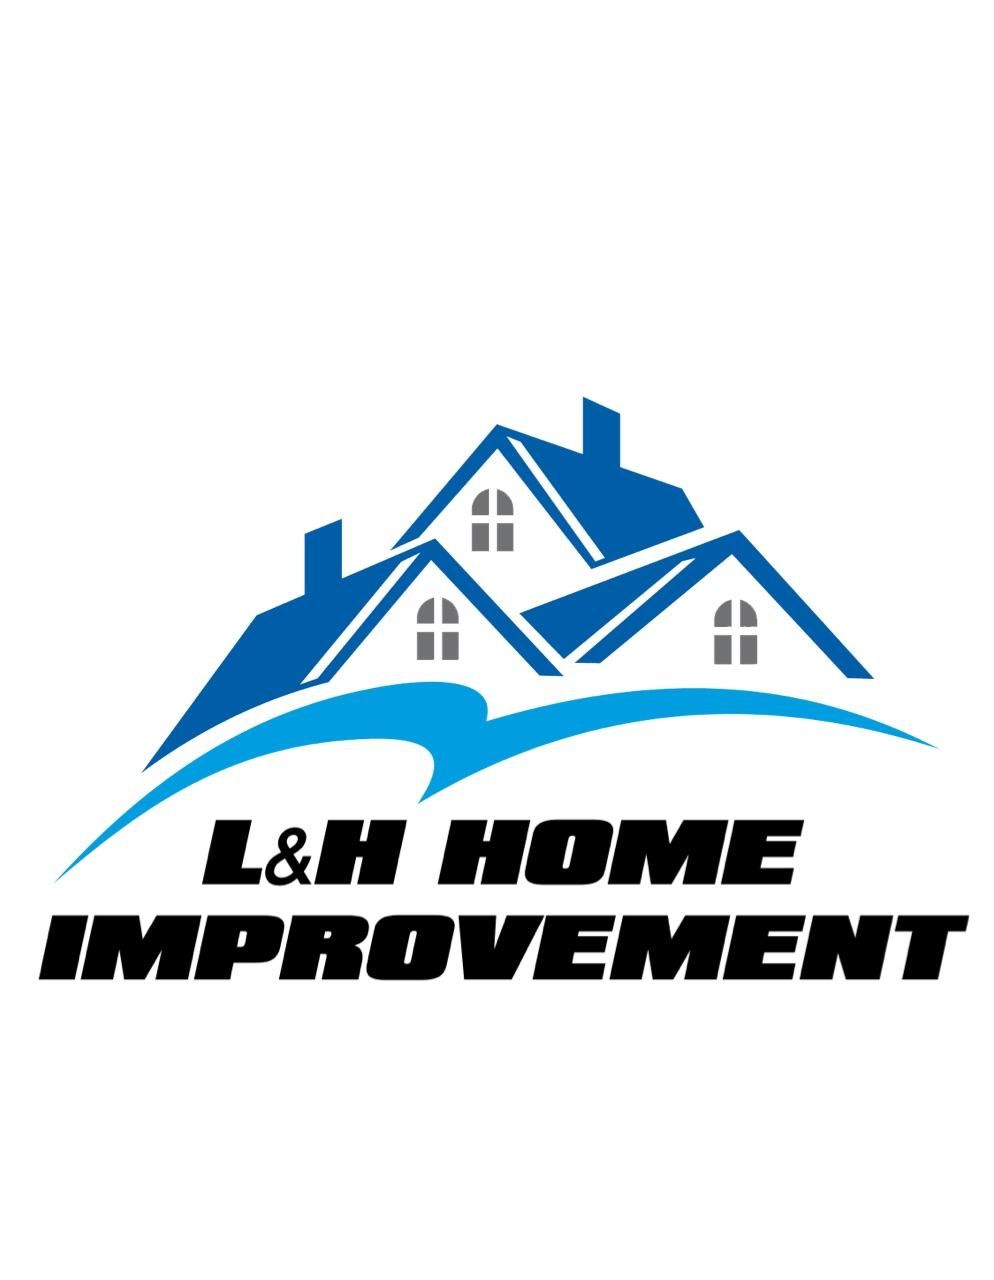 L&H home improvement